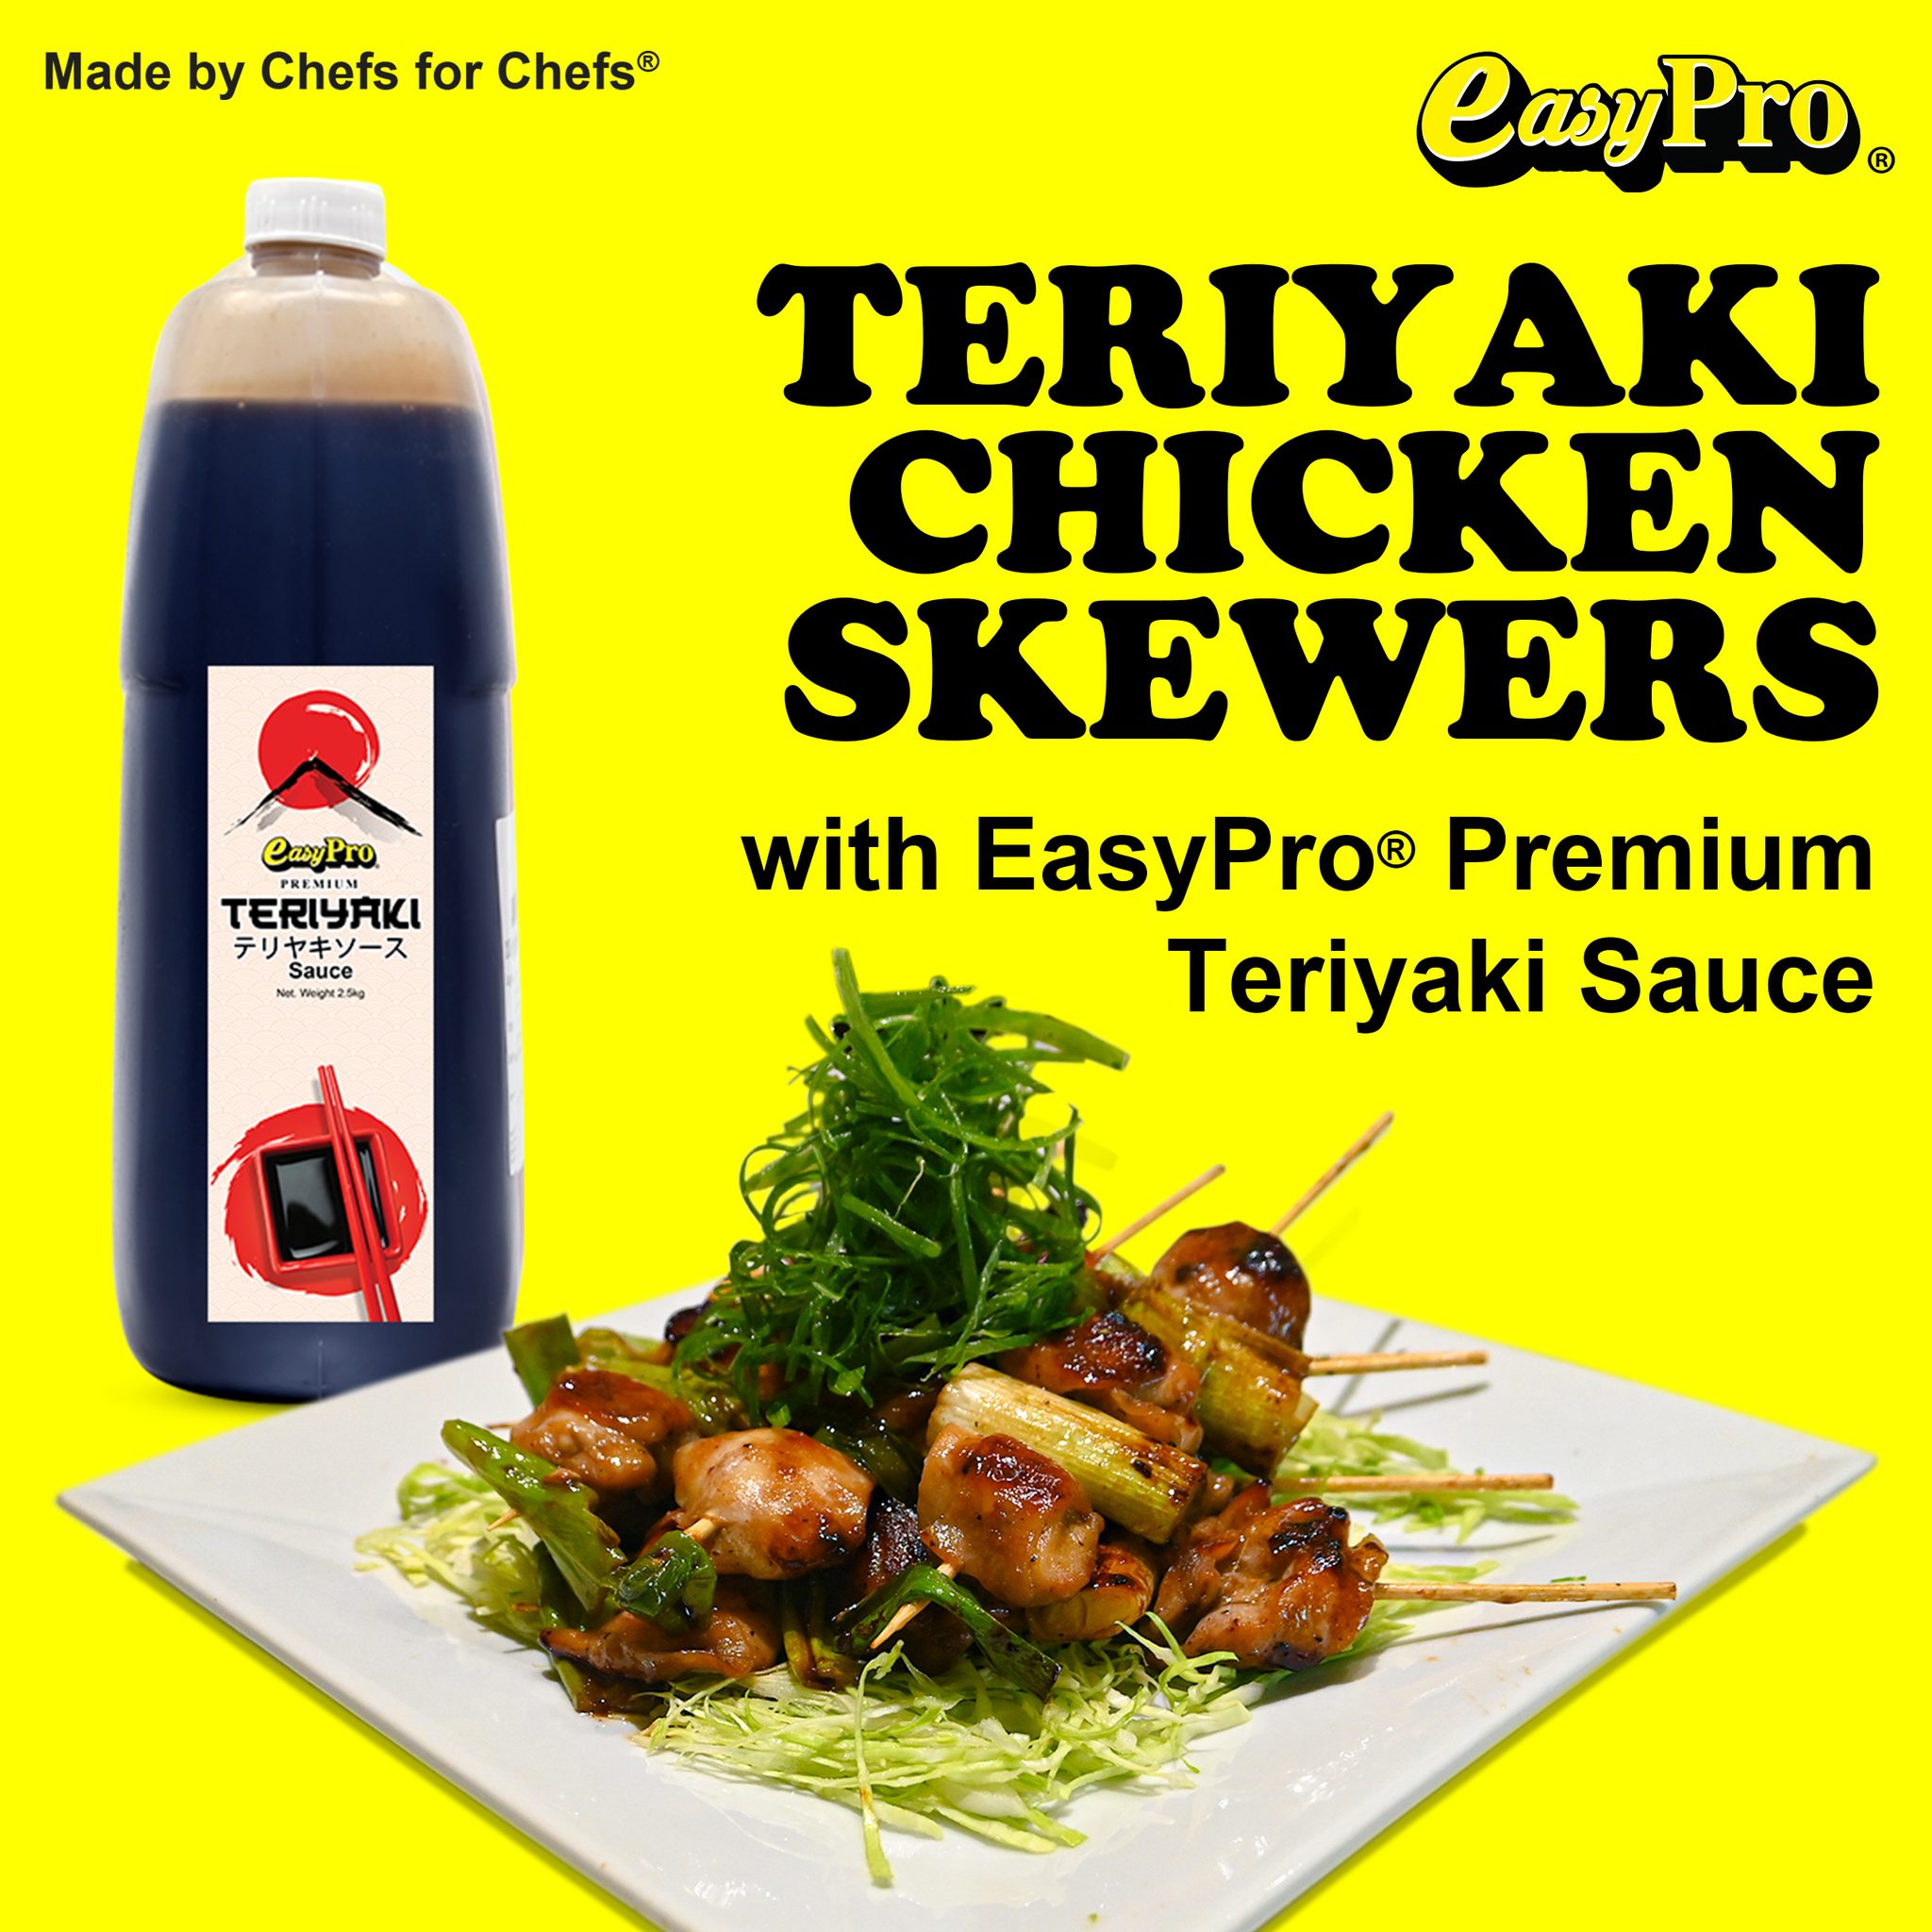 Teriyaki Chicken Skewers